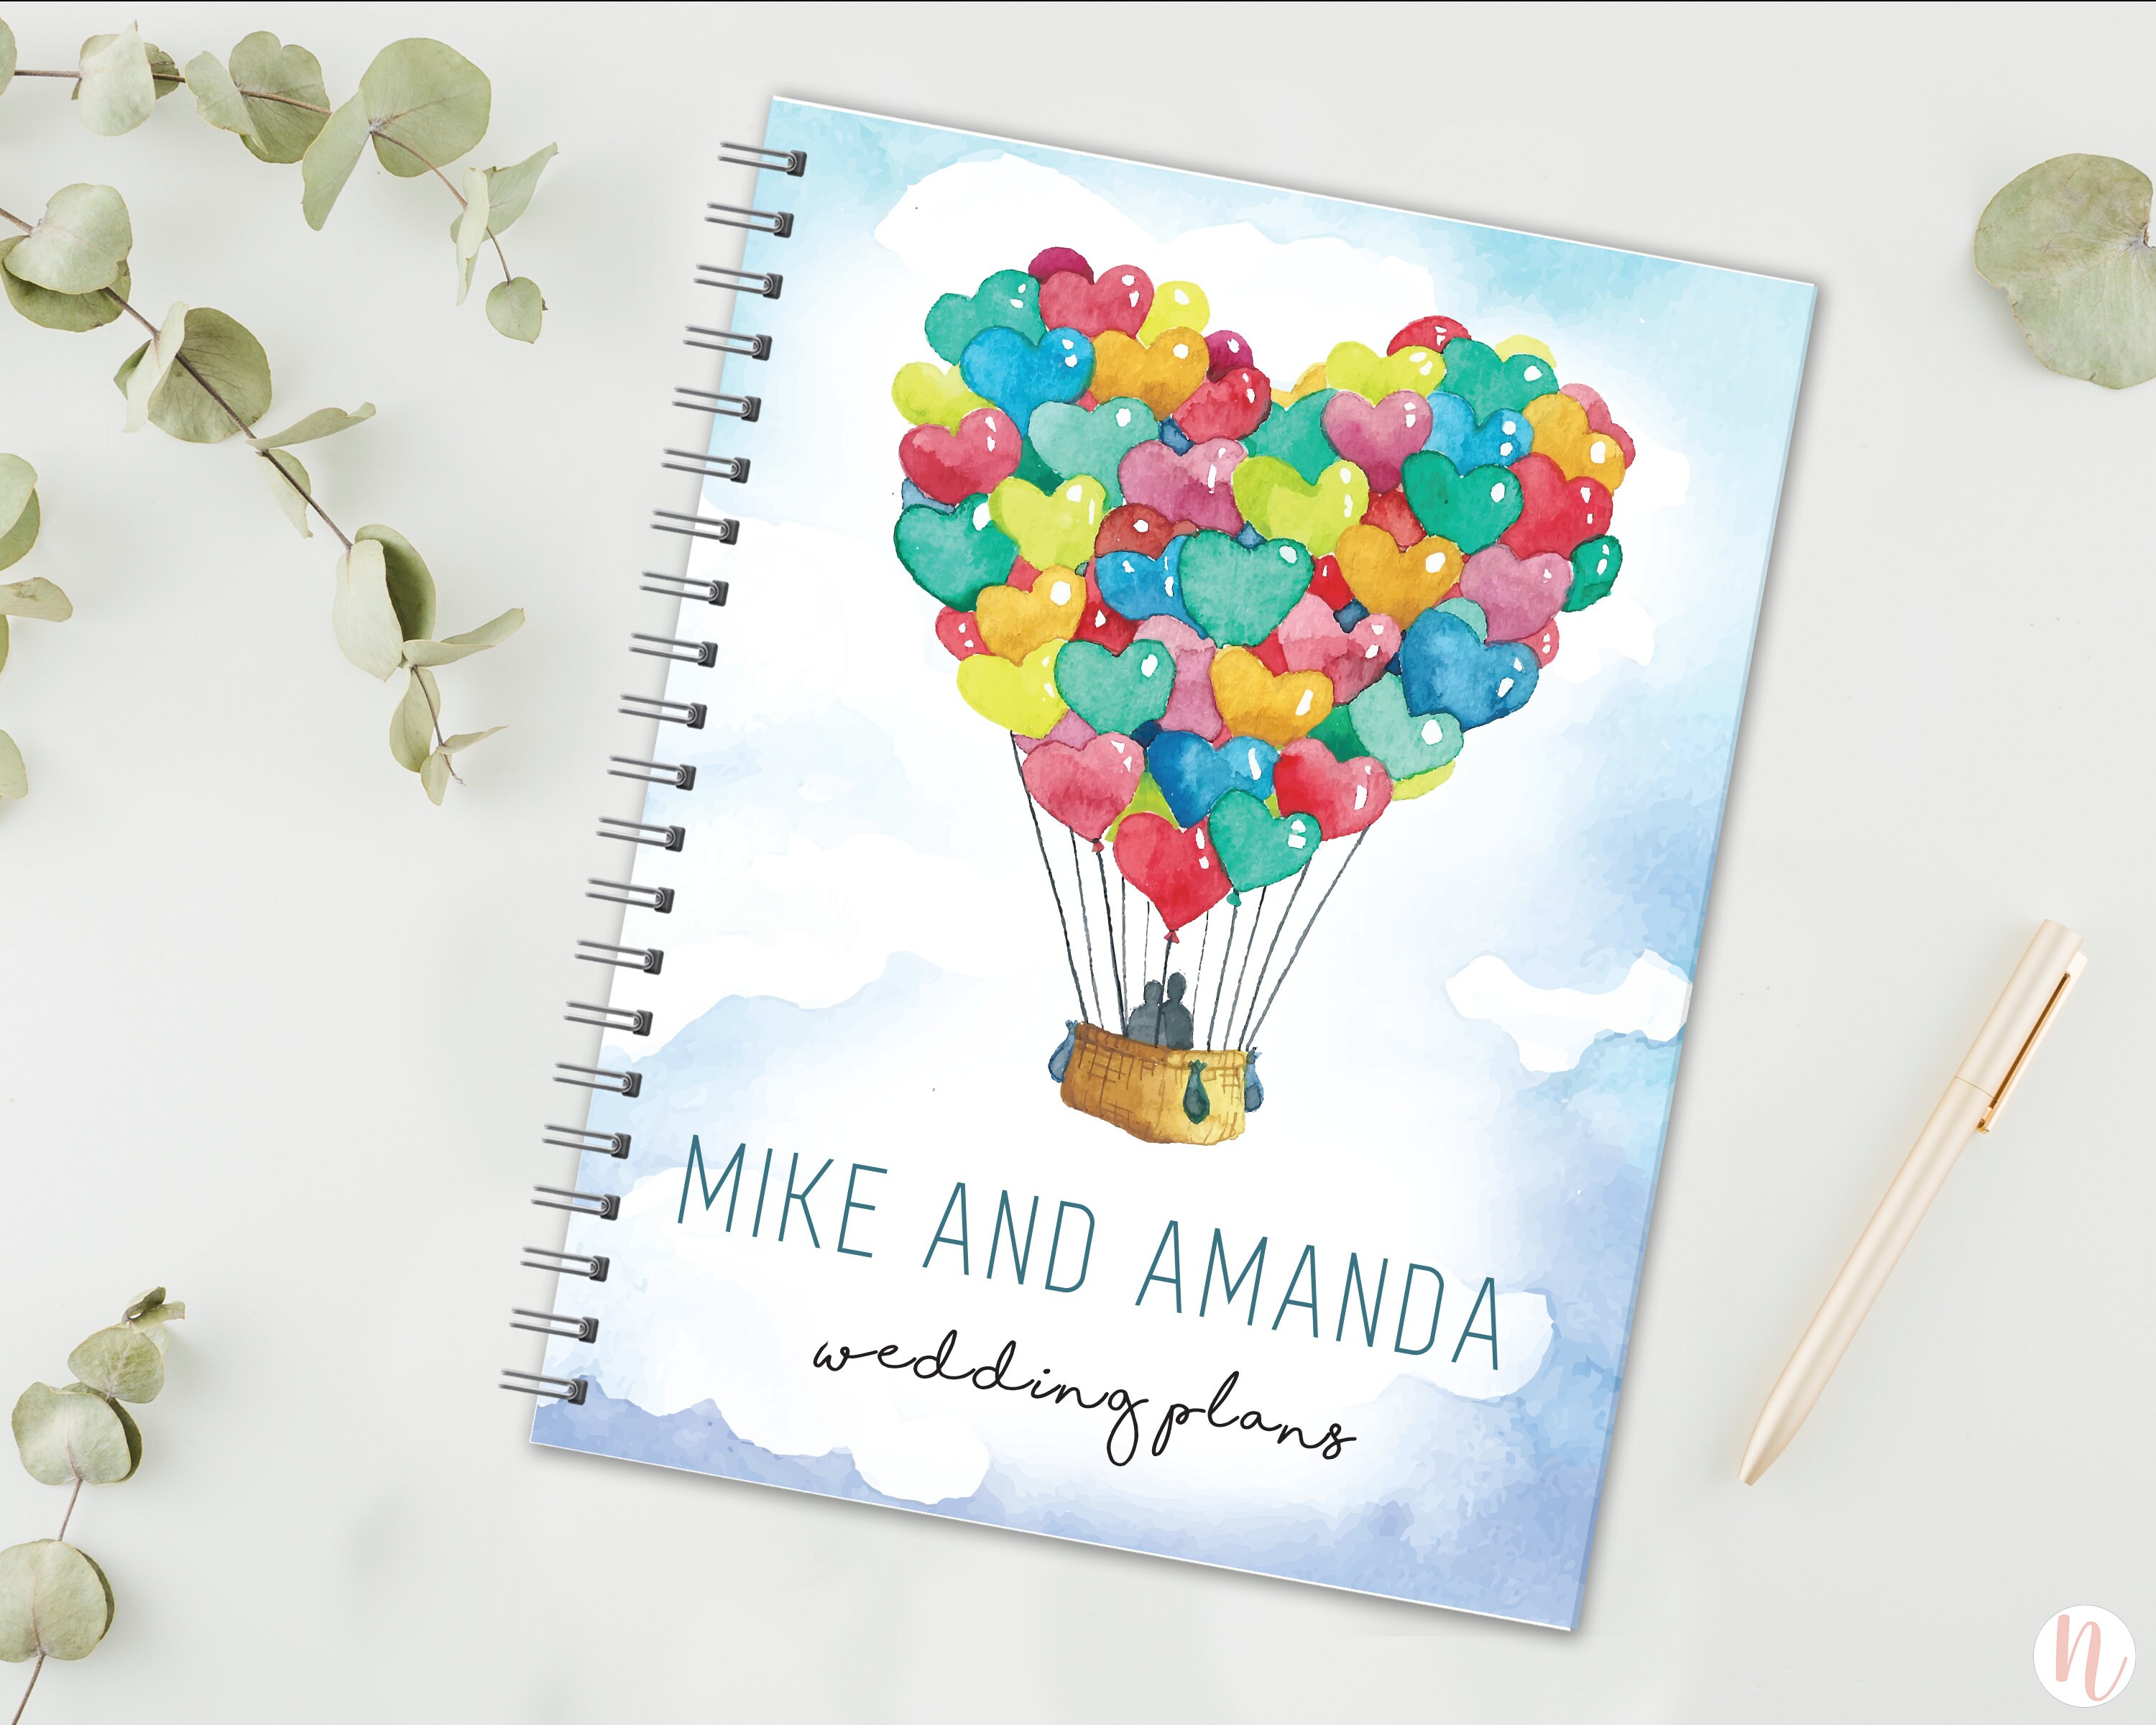 Wedding Planner Book and Organizer 'future Mrs' Wedding Planning